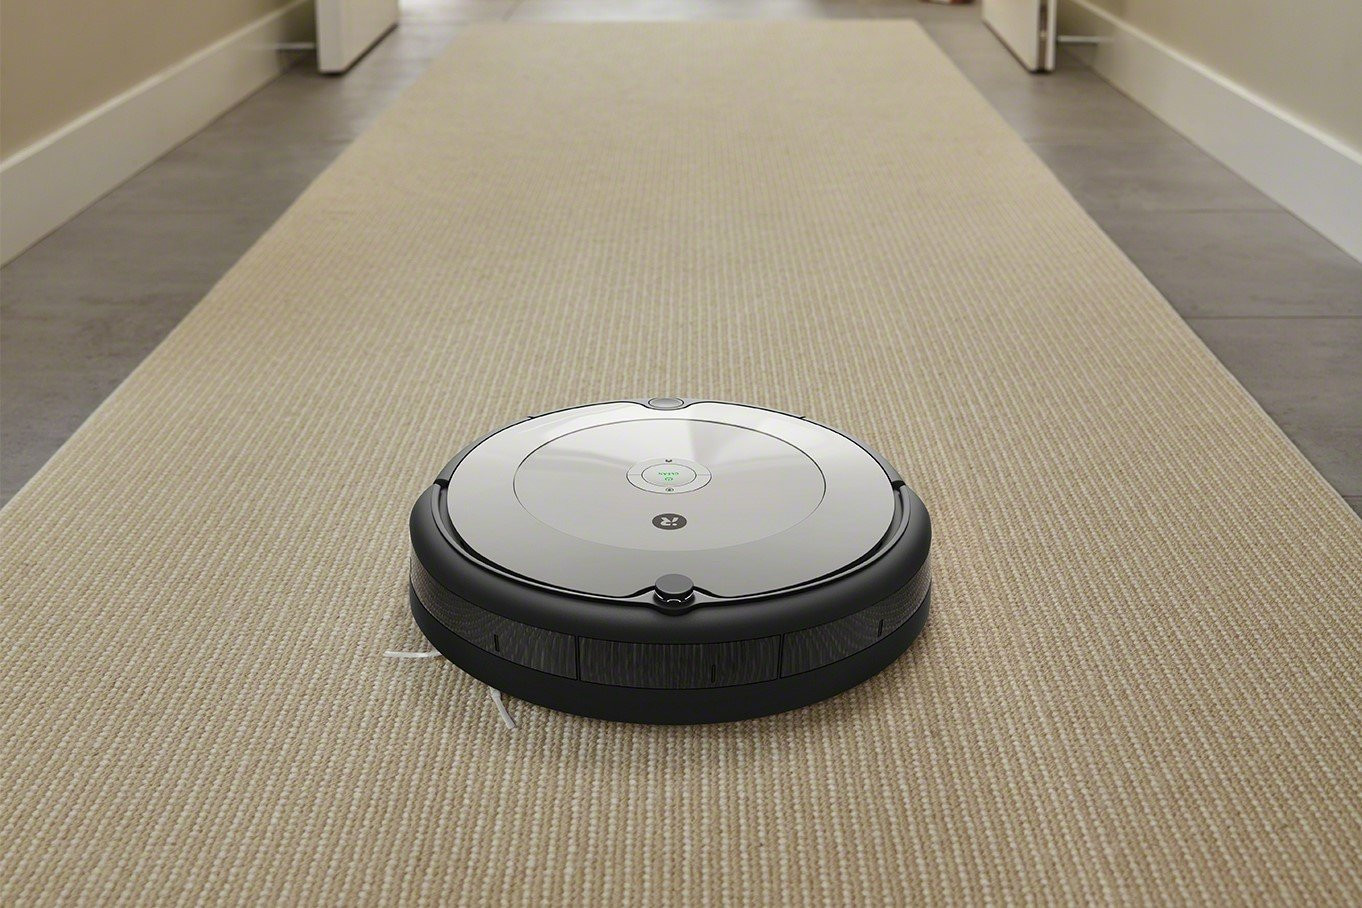 Bemutatjuk az iRobot Roomba 698 robotporszívót